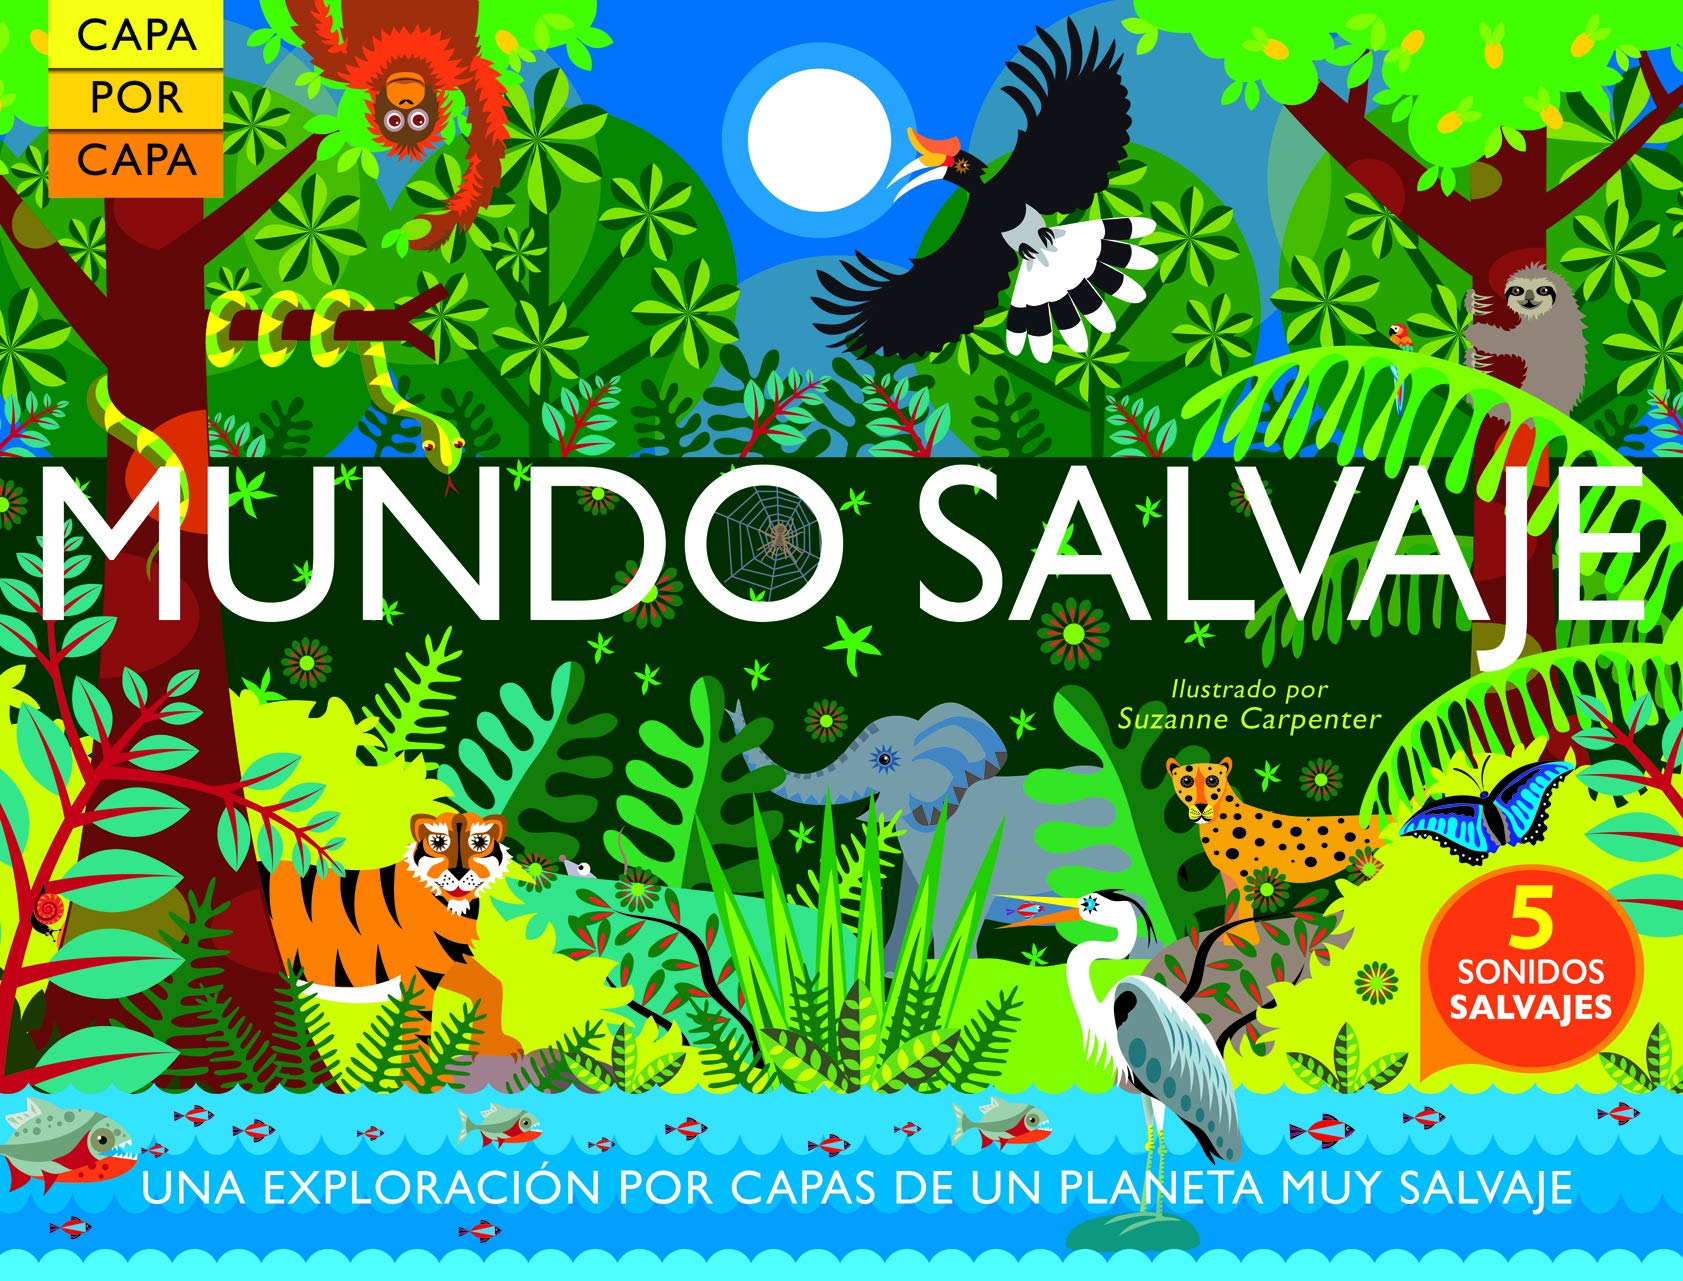 Capa por capa: MUNDO SALVAJE (Spanish Edition)